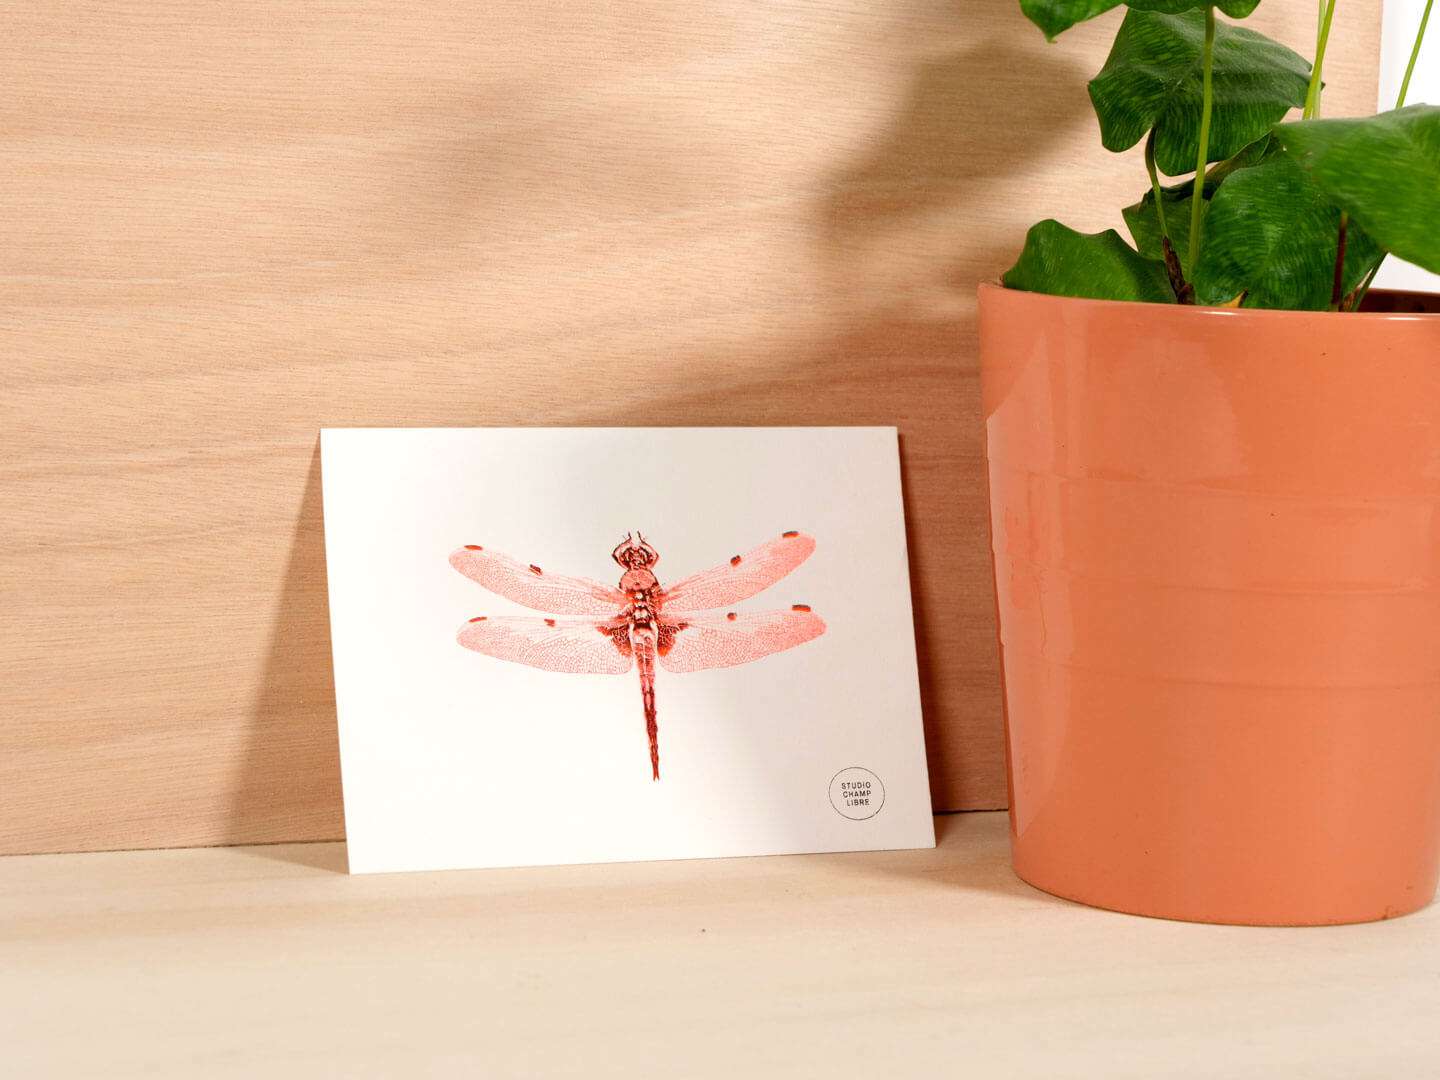 carte illustrée représentant une libellule